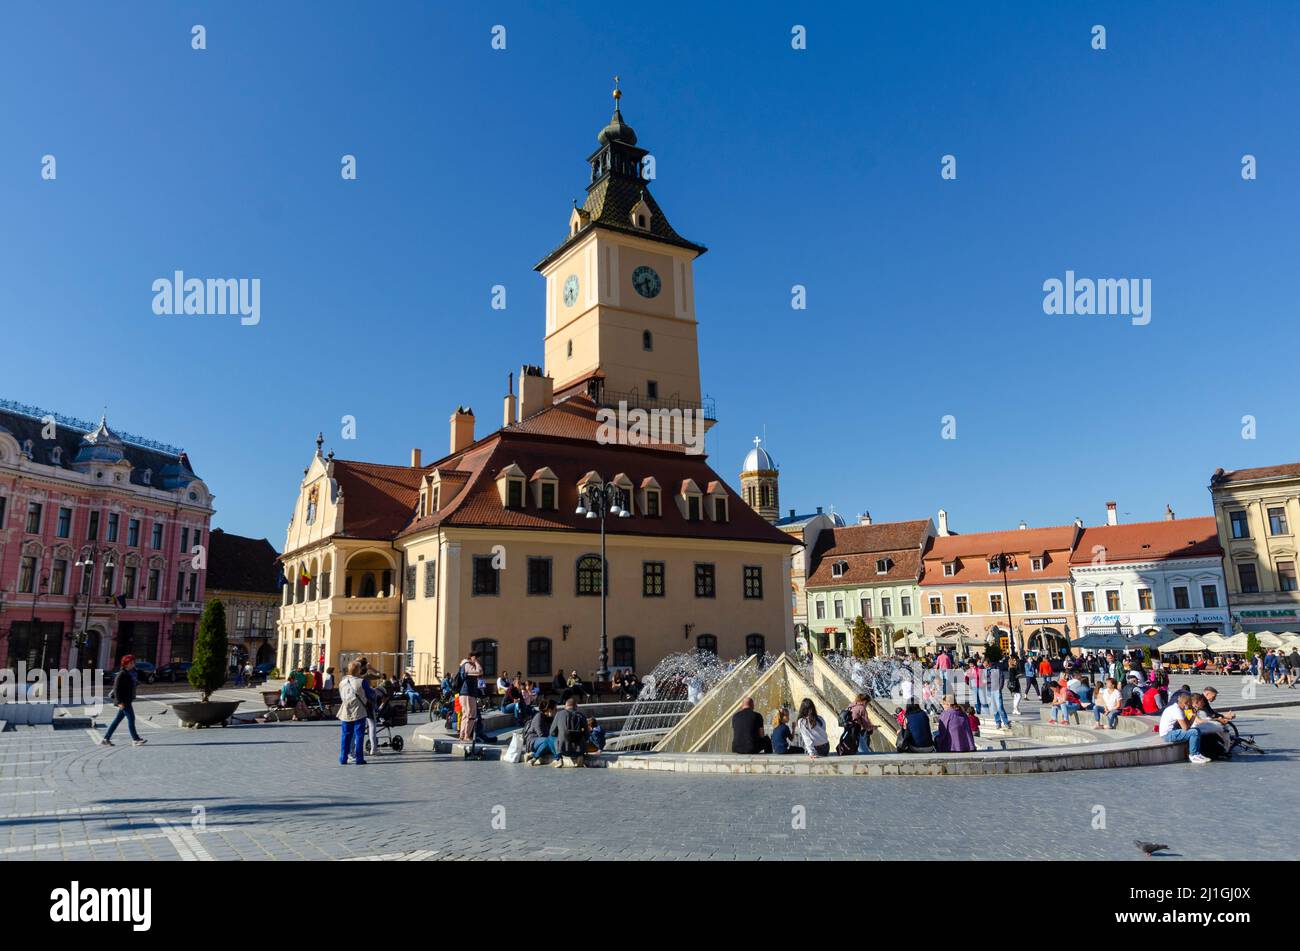 Vista generale della Piazza del Consiglio nel centro storico di Brasov, Romania. La Casa del Consiglio domina il centro dell'immagine - Foto: Geopix Foto Stock